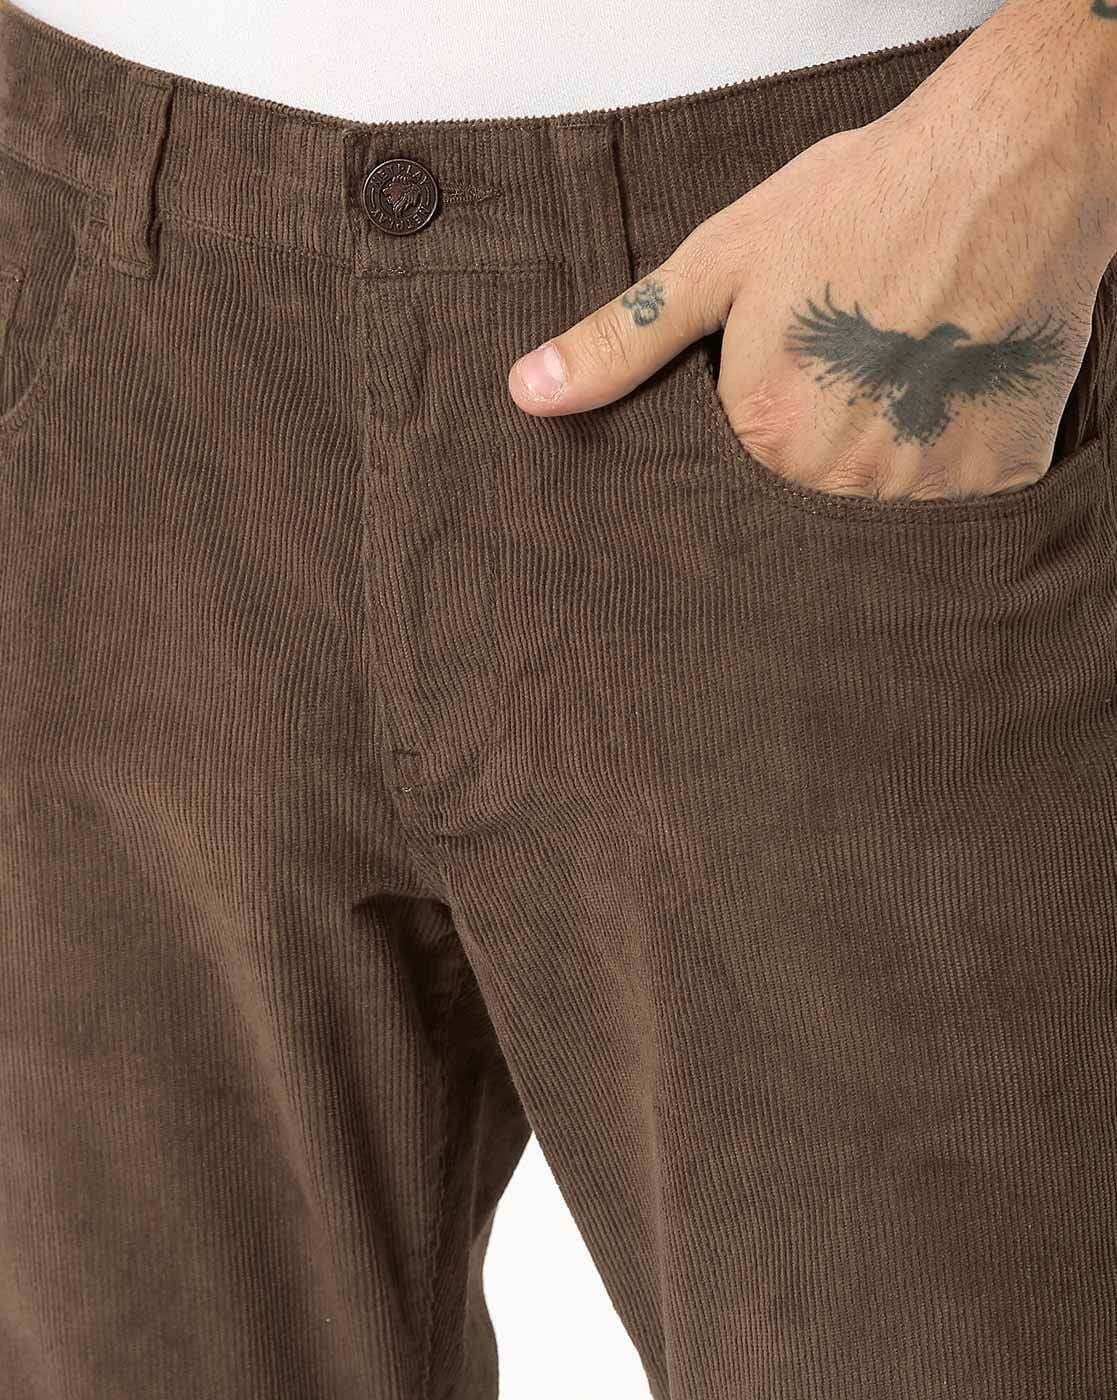 in365 Mens Slim Fit Solid Corduroy Trouser  Coffee